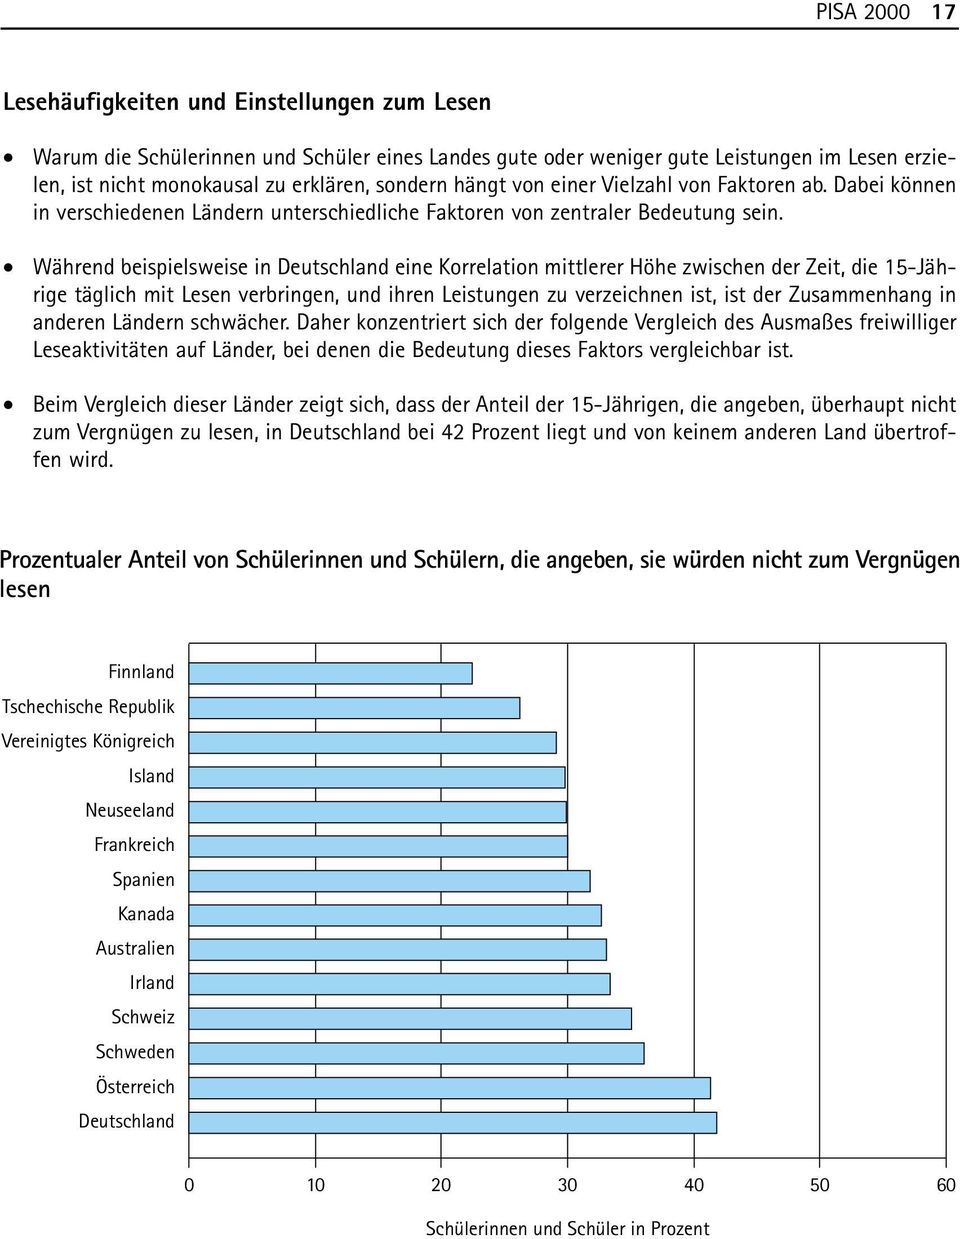 Während beispielsweise in Deutschland eine Korrelation mittlerer Höhe zwischen der Zeit, die 15-Jährige täglich mit Lesen verbringen, und ihren Leistungen zu verzeichnen ist, ist der Zusammenhang in